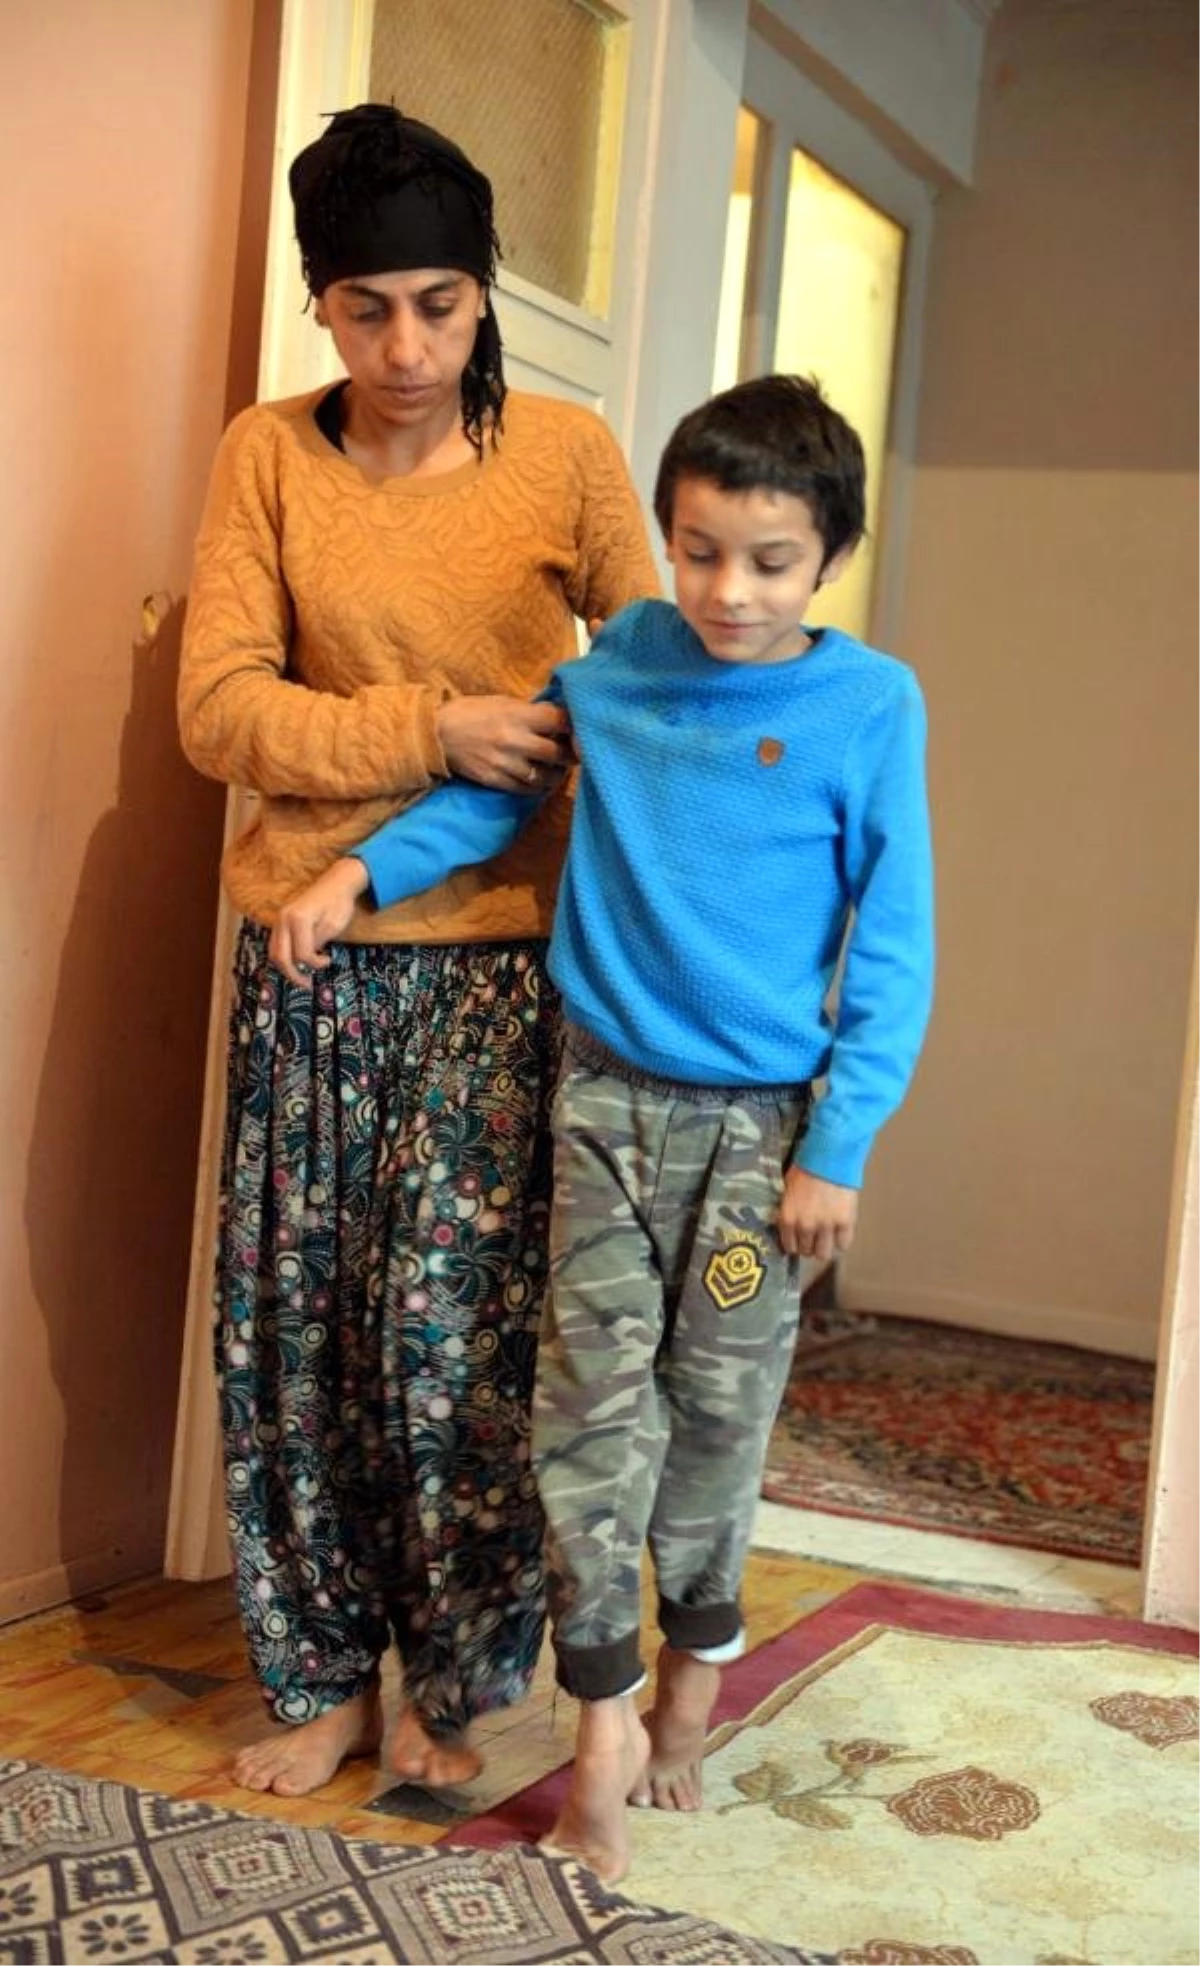 Kas Erimesi Hastası İbrahim, Okula Gitmek İstiyor